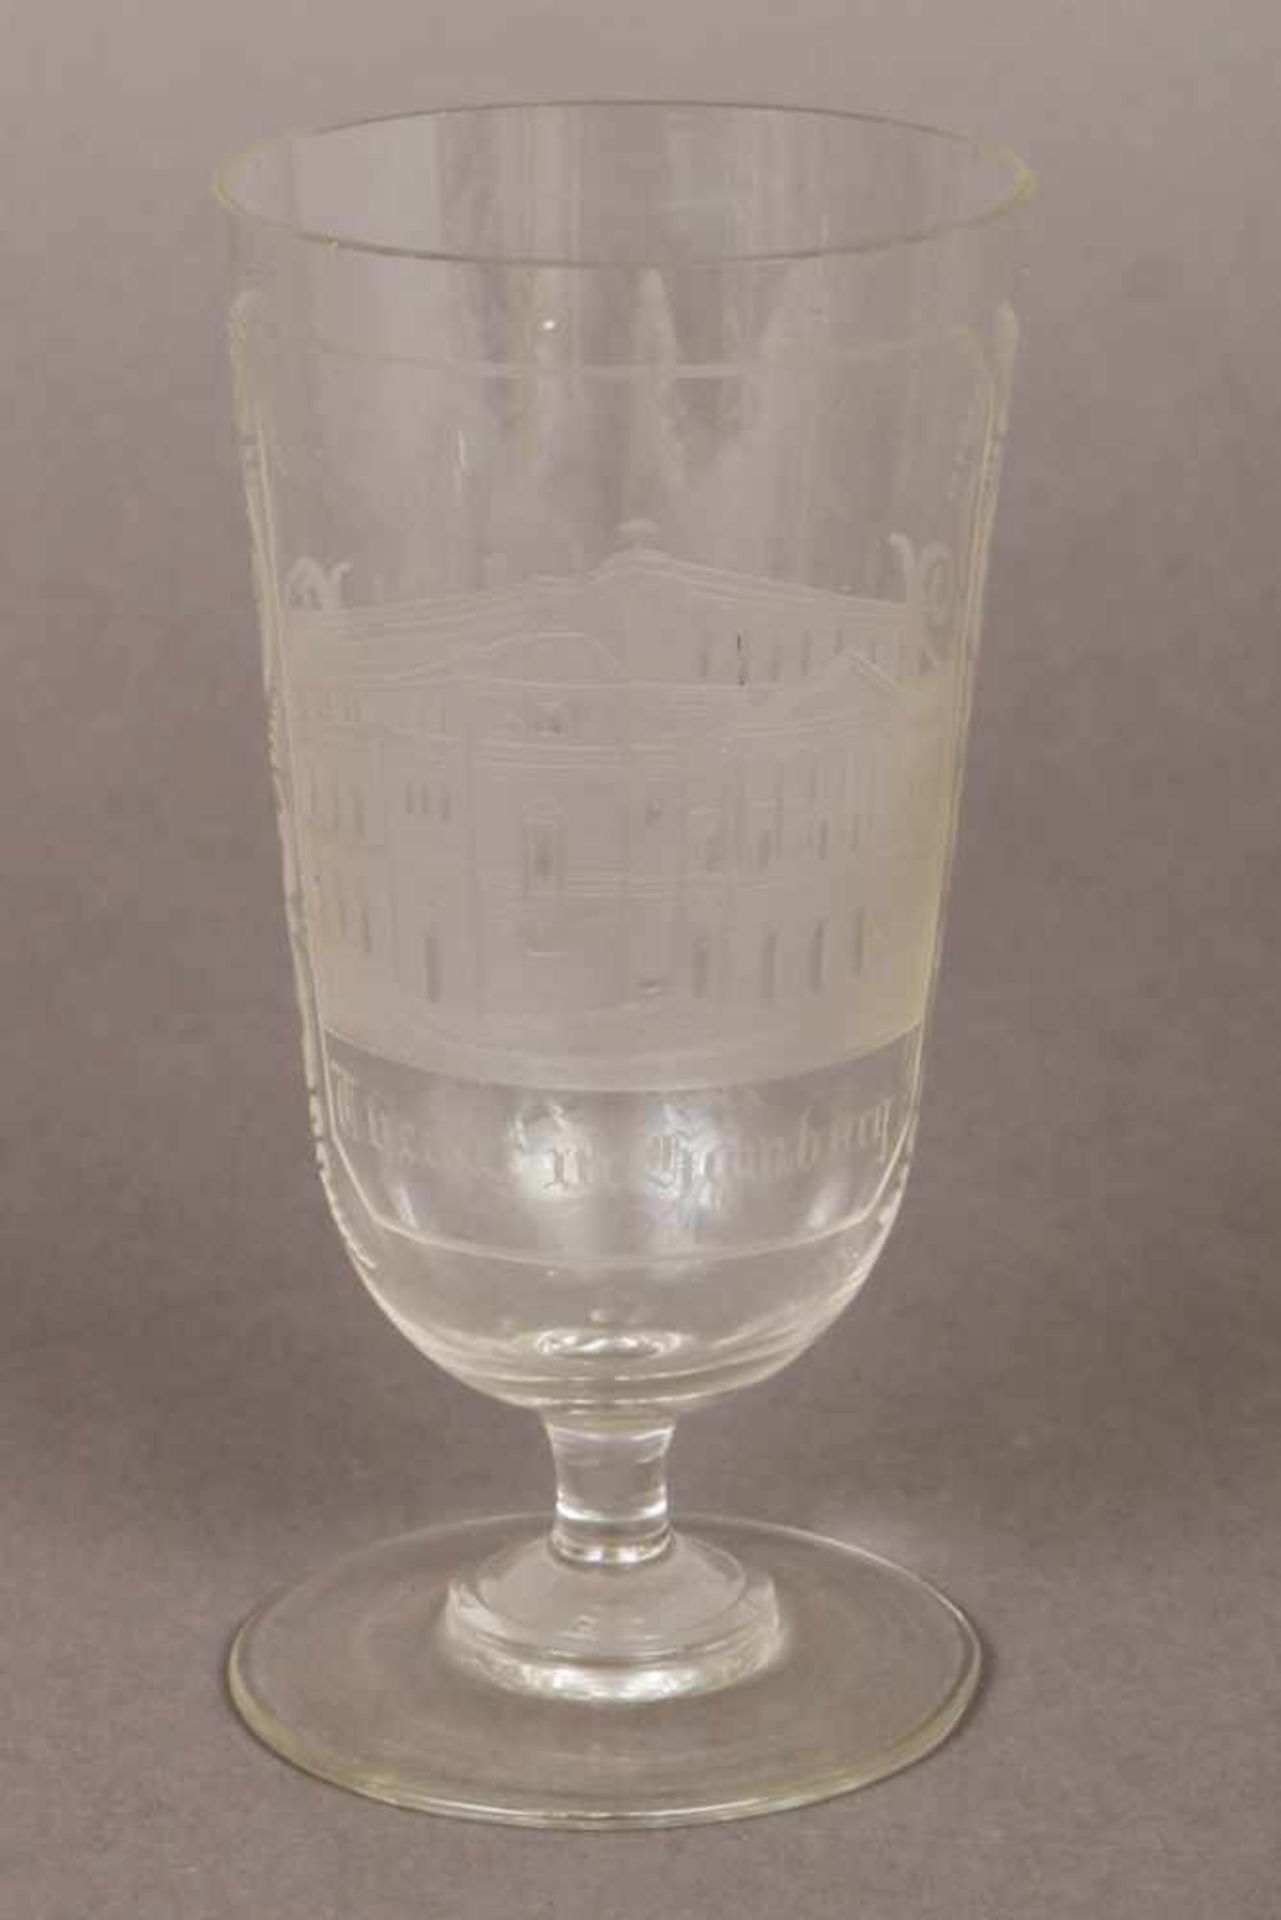 Andenkenglas des 19. Jhdt. farbloses Glas, hohe, leicht trichterförmige Kuppa mit geschliffener